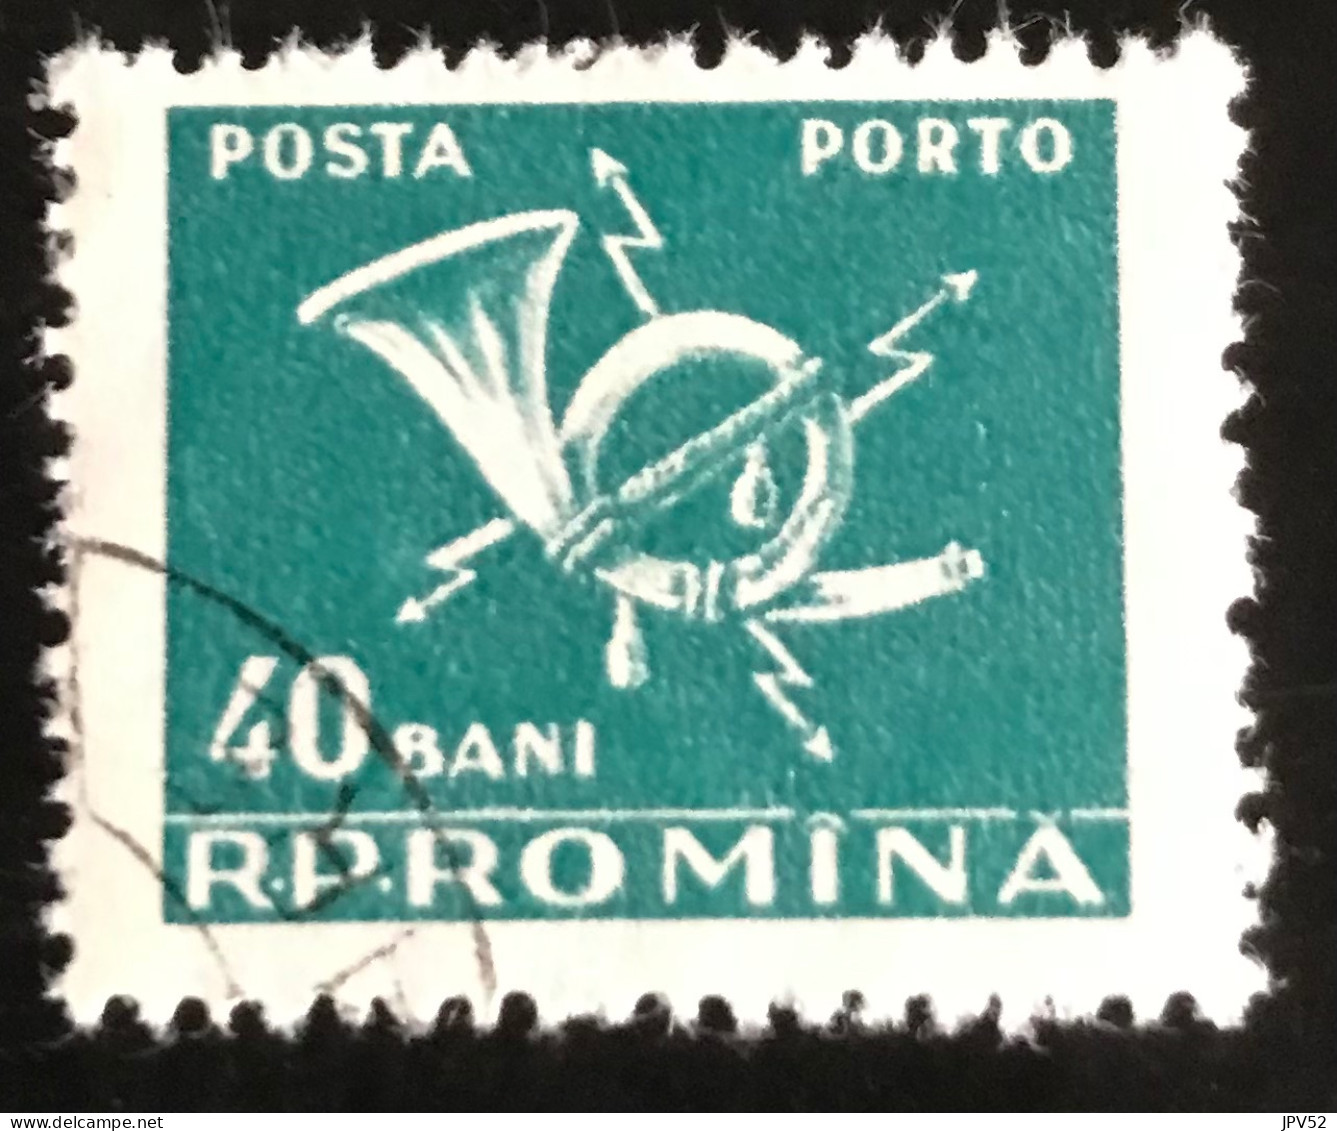 Romana - Roemenië - C14/55 - 1957 - (°)used - Michel 105 - Posthoorn & Bliksem - Postage Due